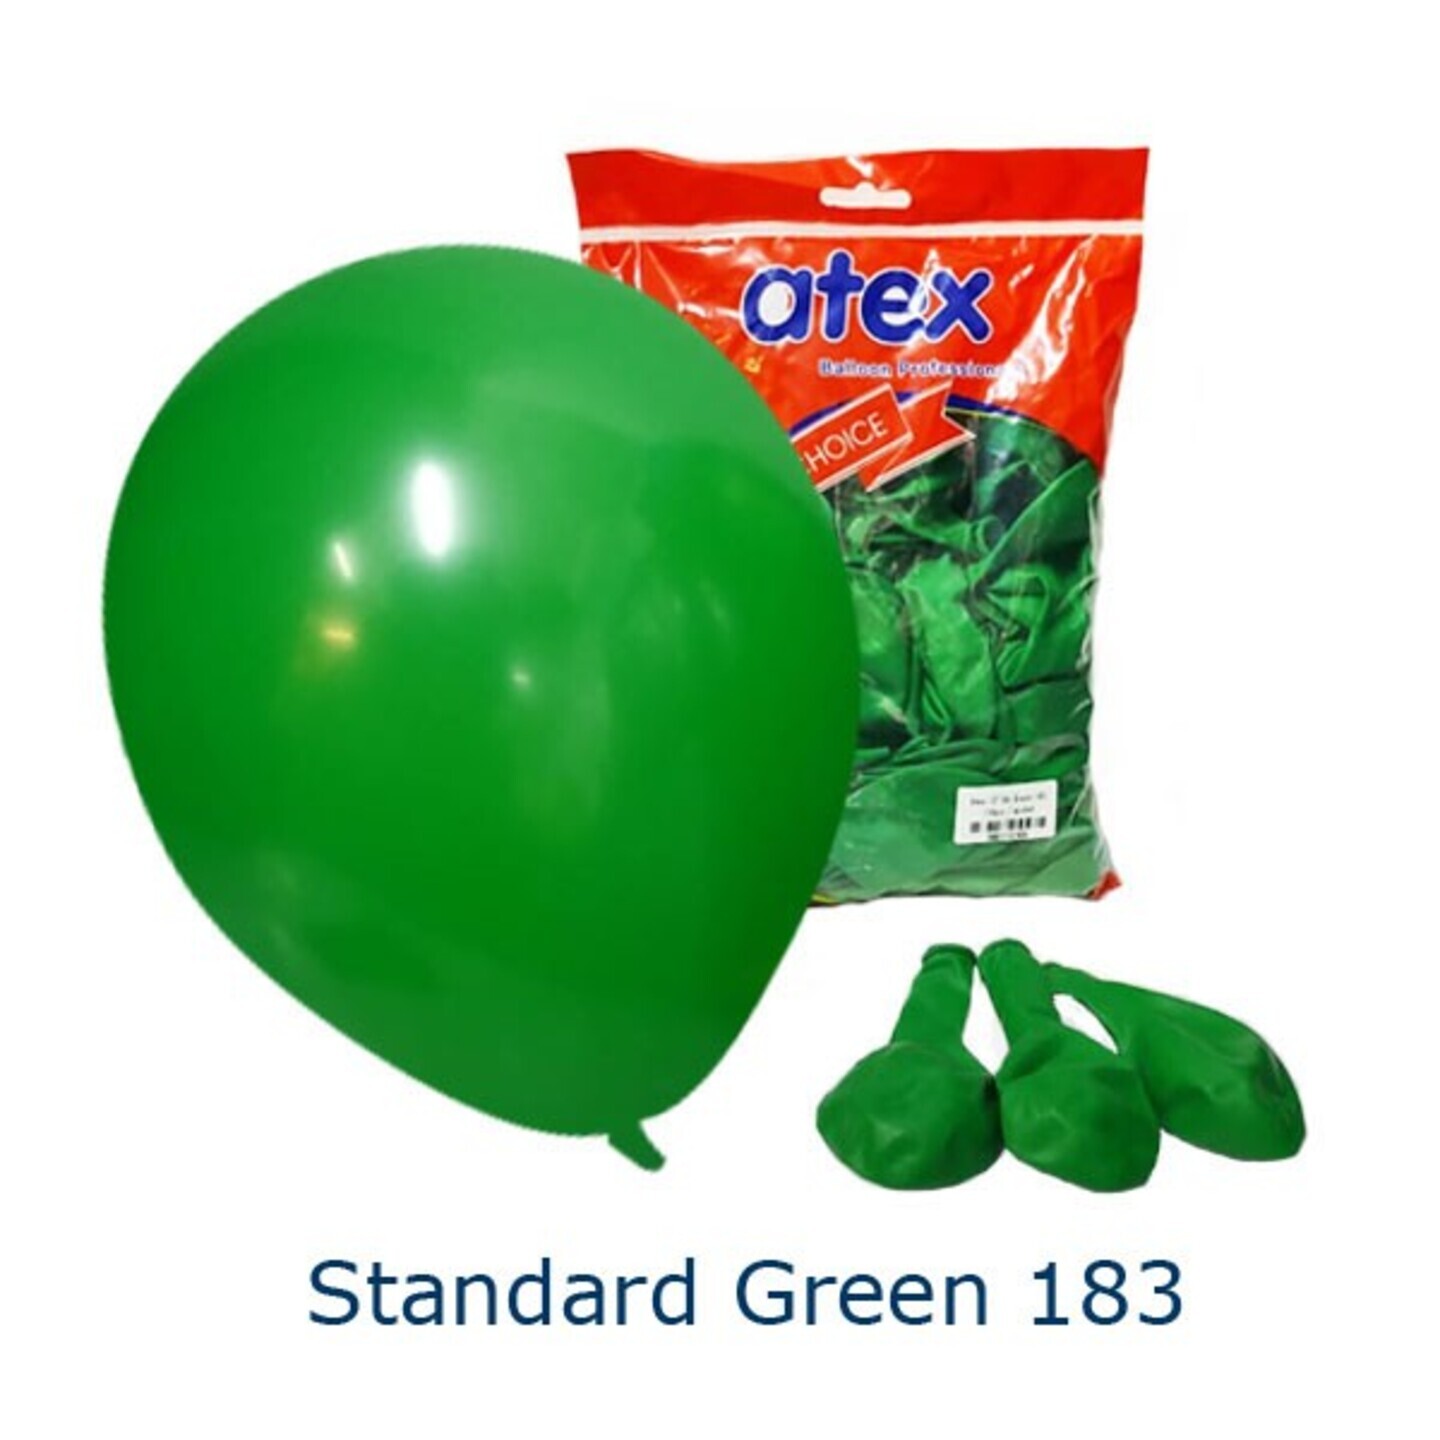 Standard Green 183